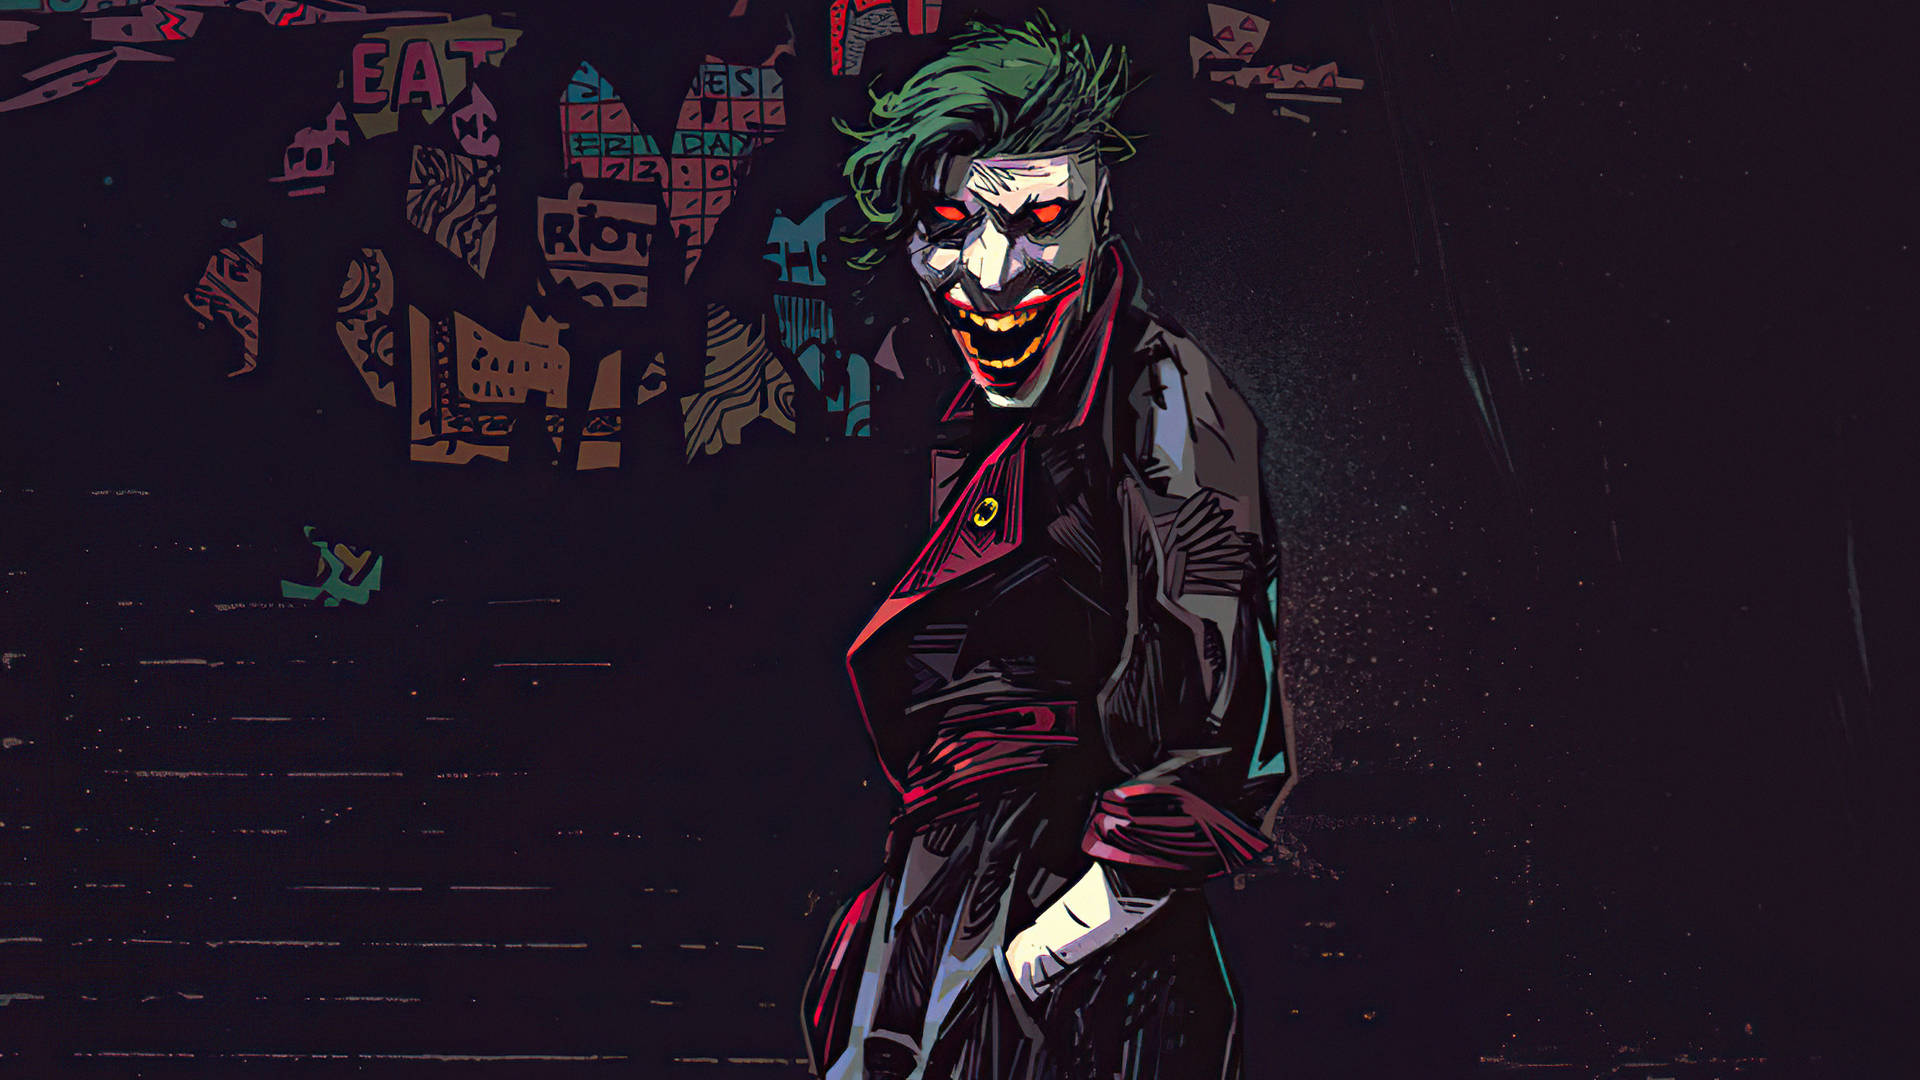 Black Ultra Hd Joker With Demonic Eyes